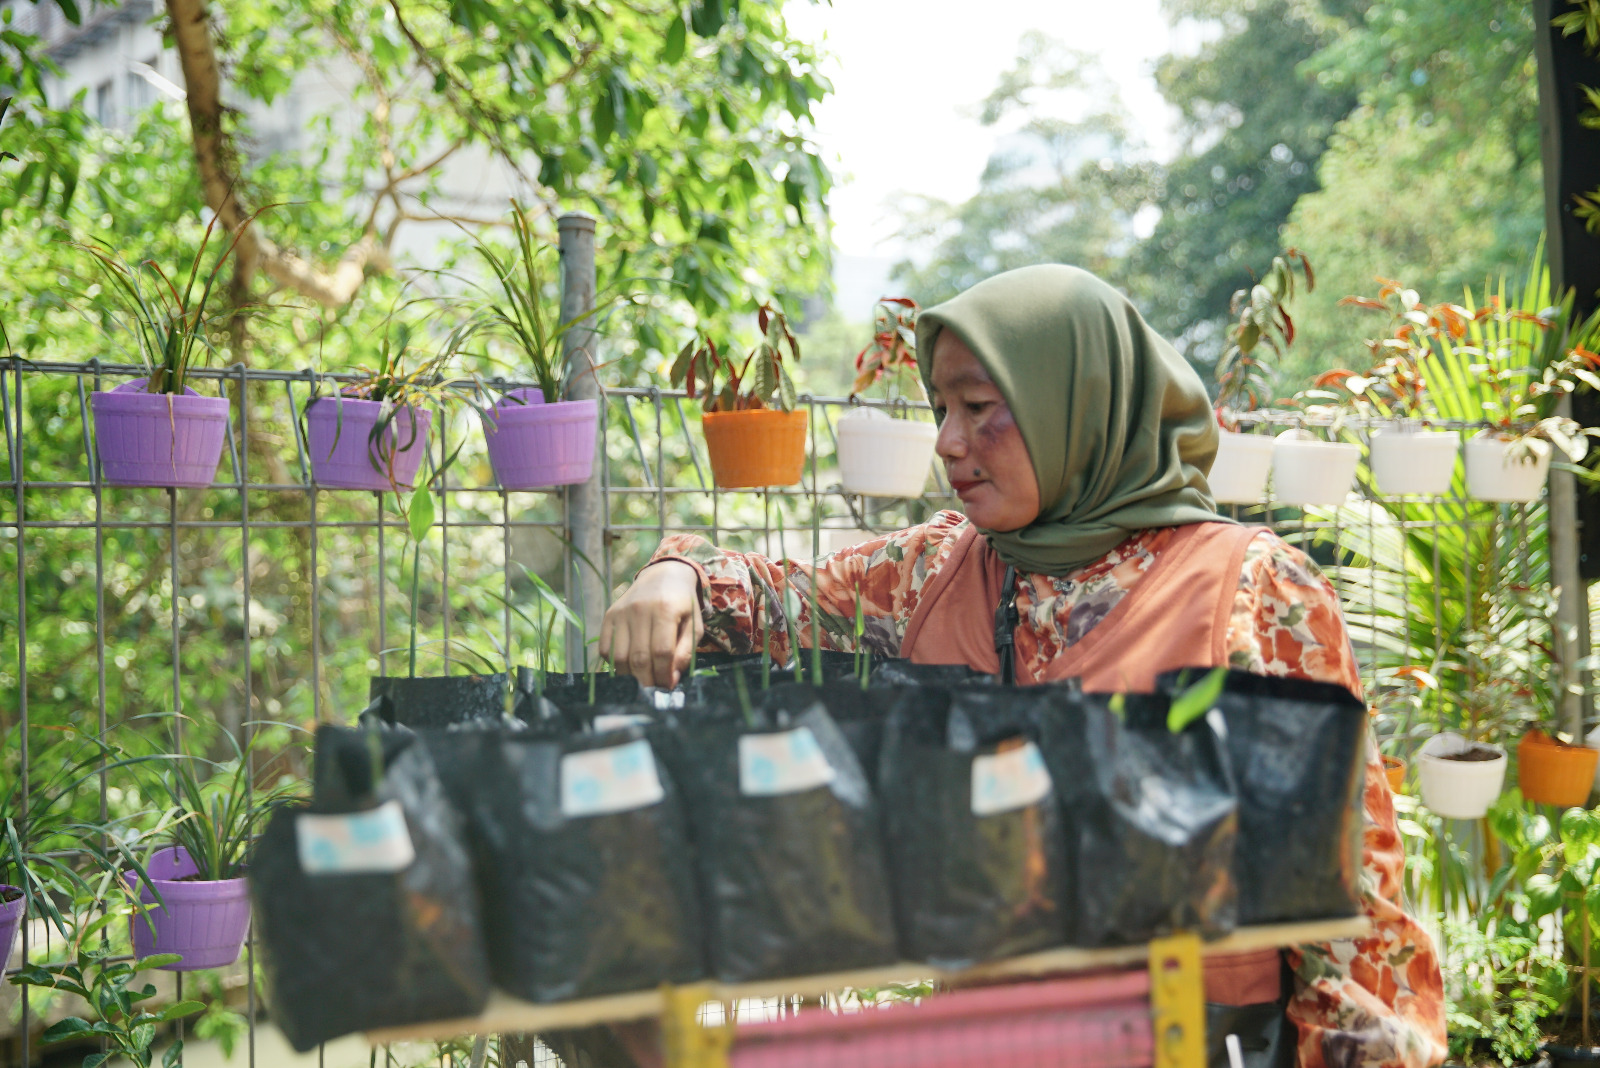 Program BRInita Bikin Kampung Palm Eco Green Village Malang Makin Asri